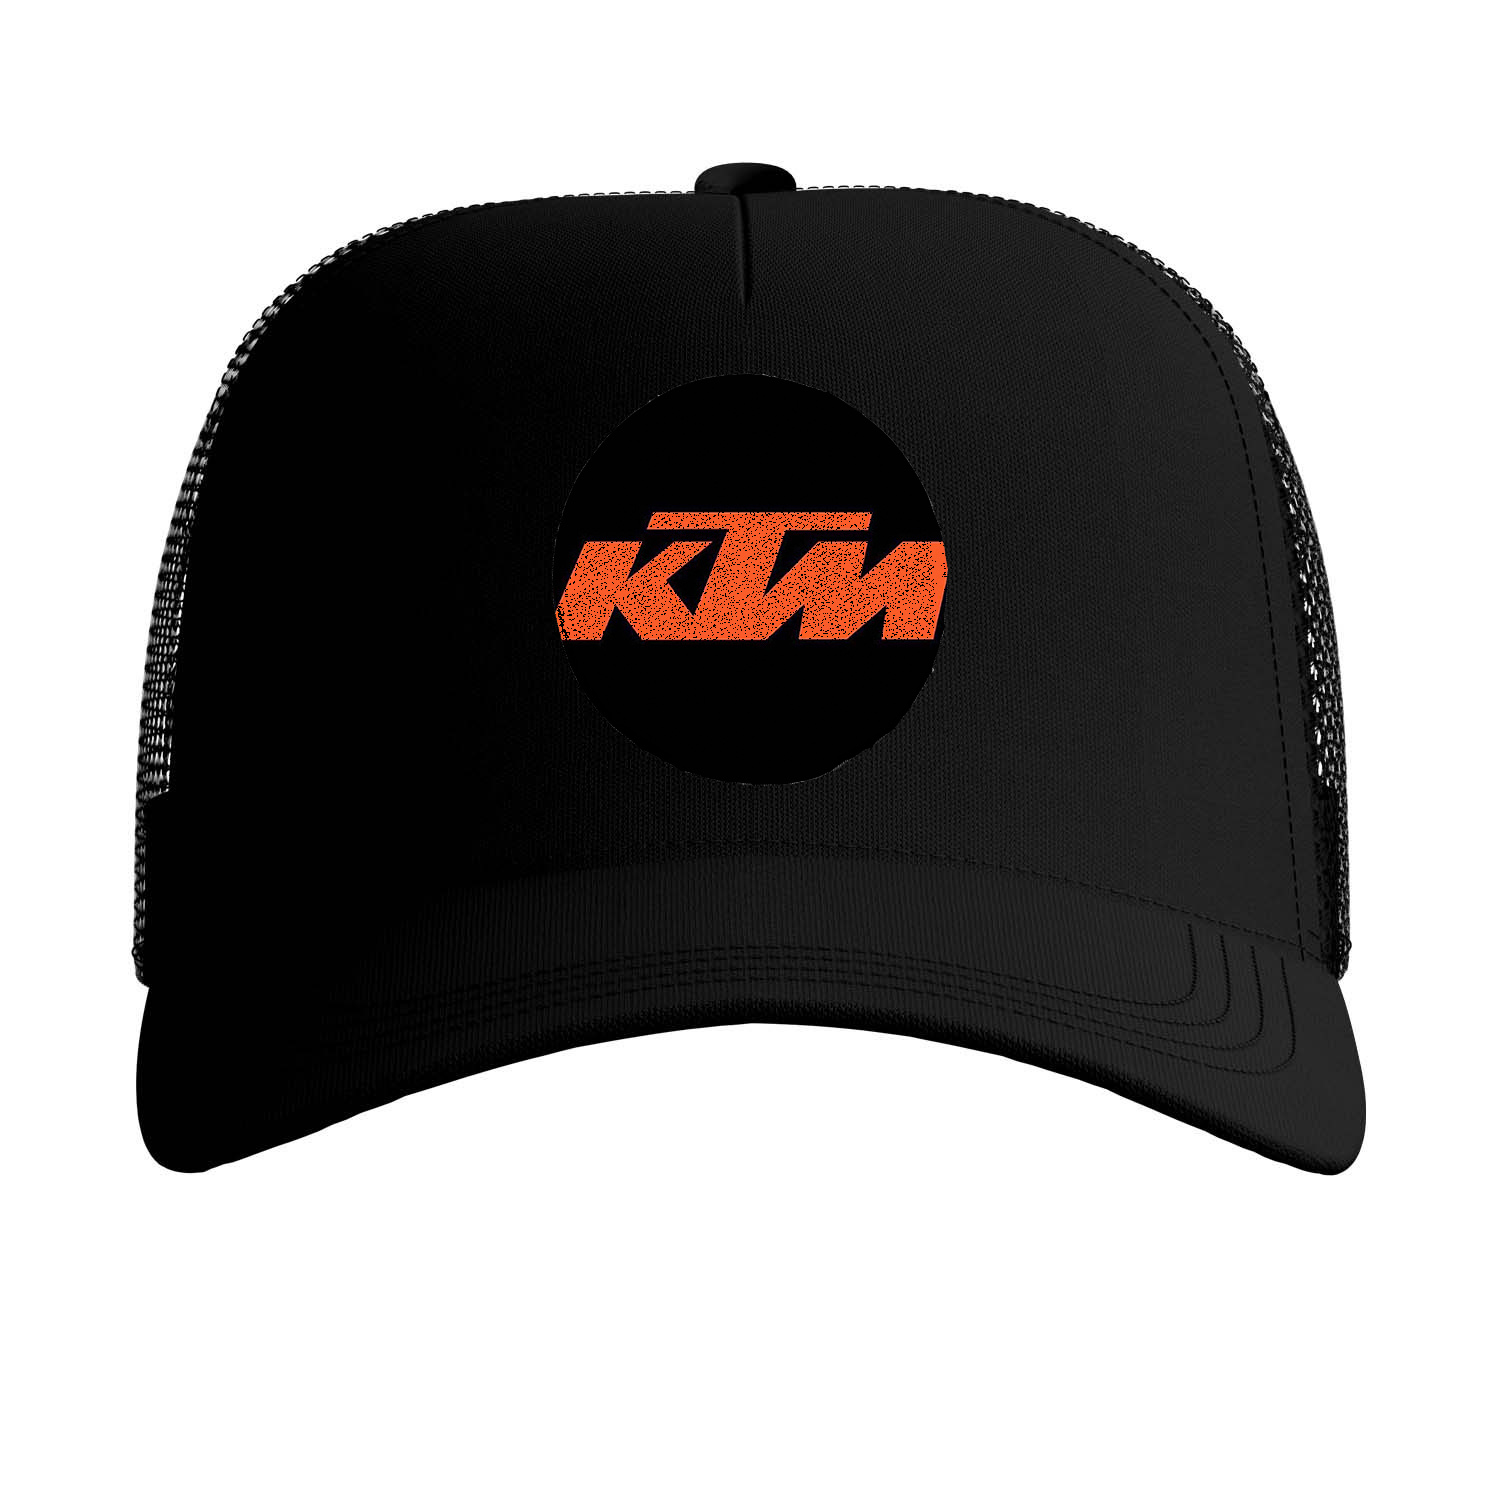 کلاه کپ آی تمر مدل ktm کد 32